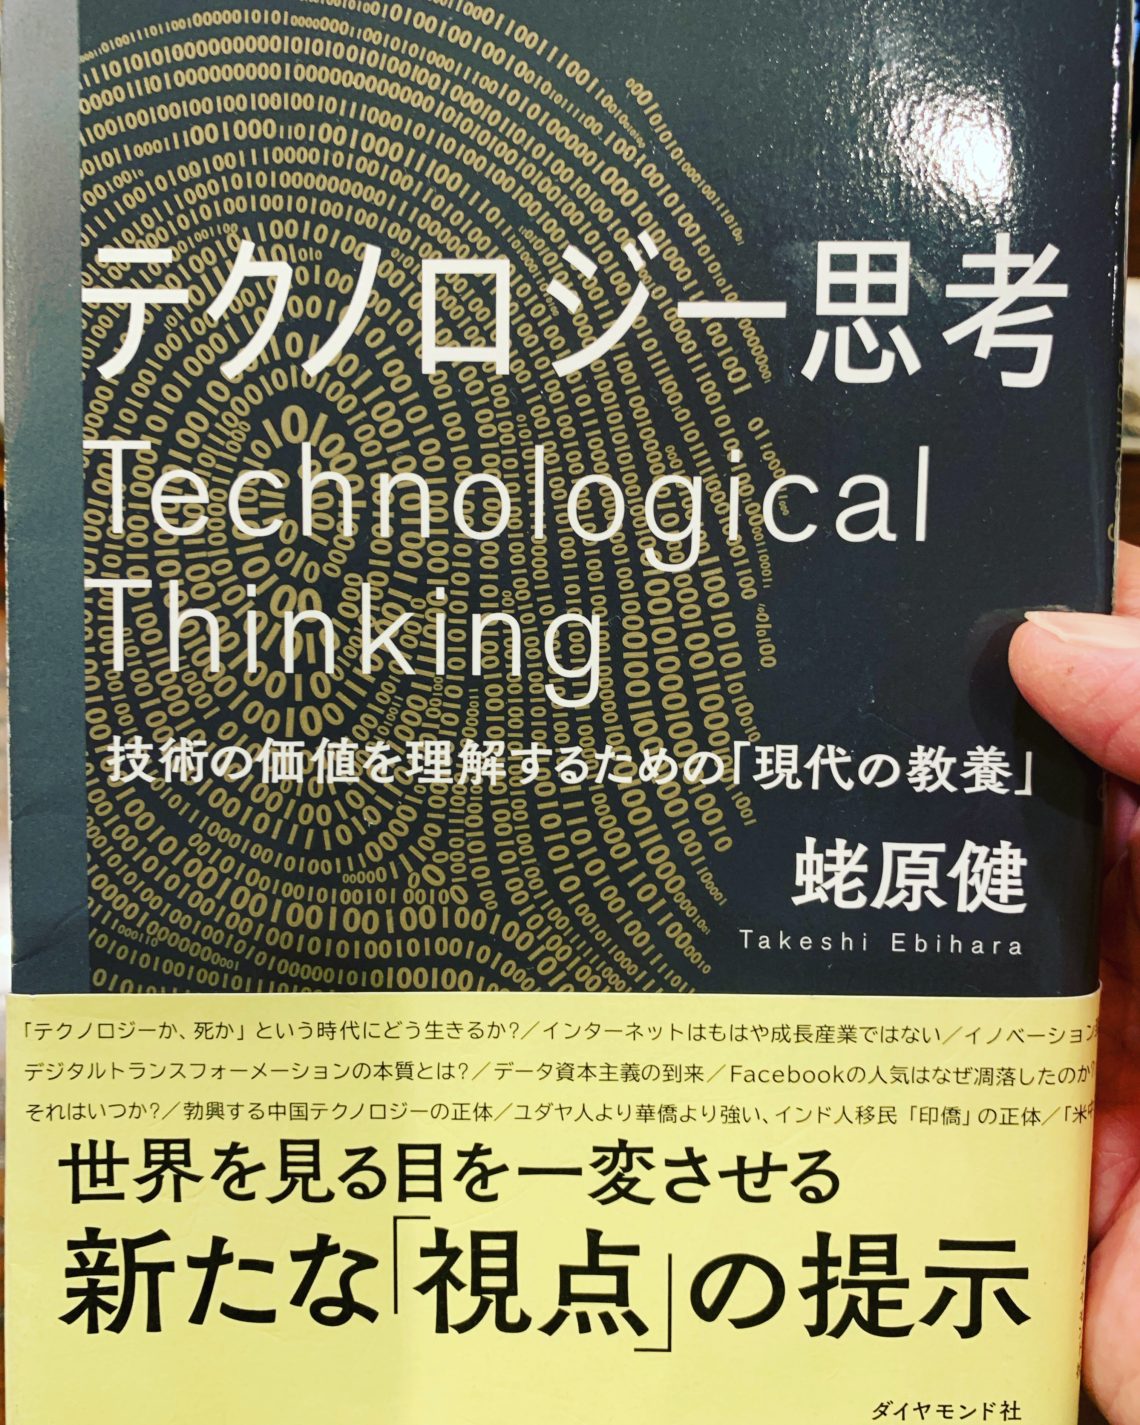 「テクノロジー思考」と「現代の教養」。